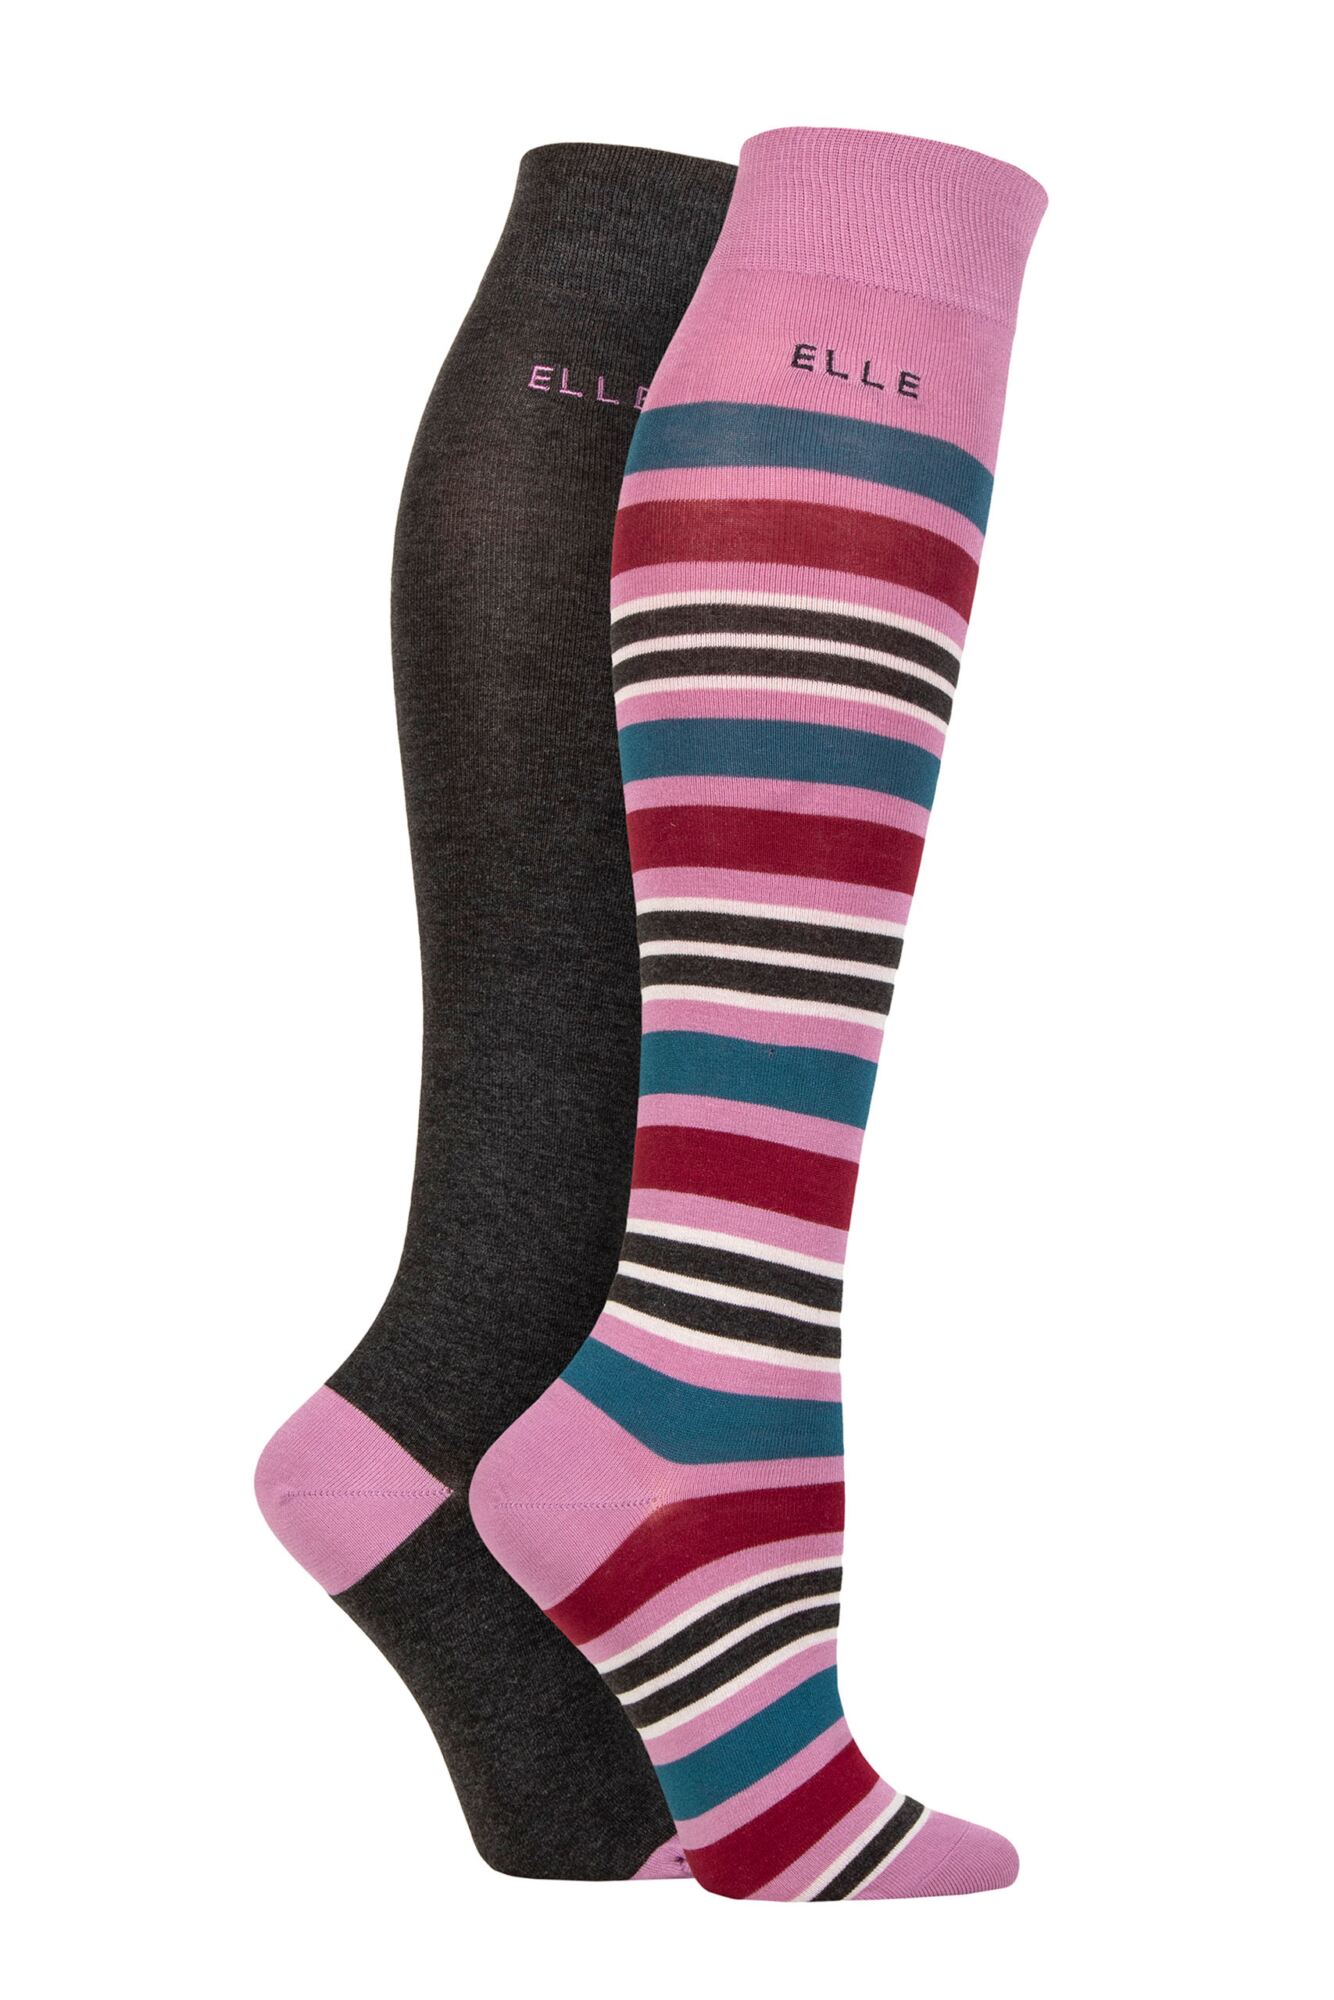 Elle-Ladies Bamboo Knee High Socks-2 Pair Pack-Smokey Pink Stripe